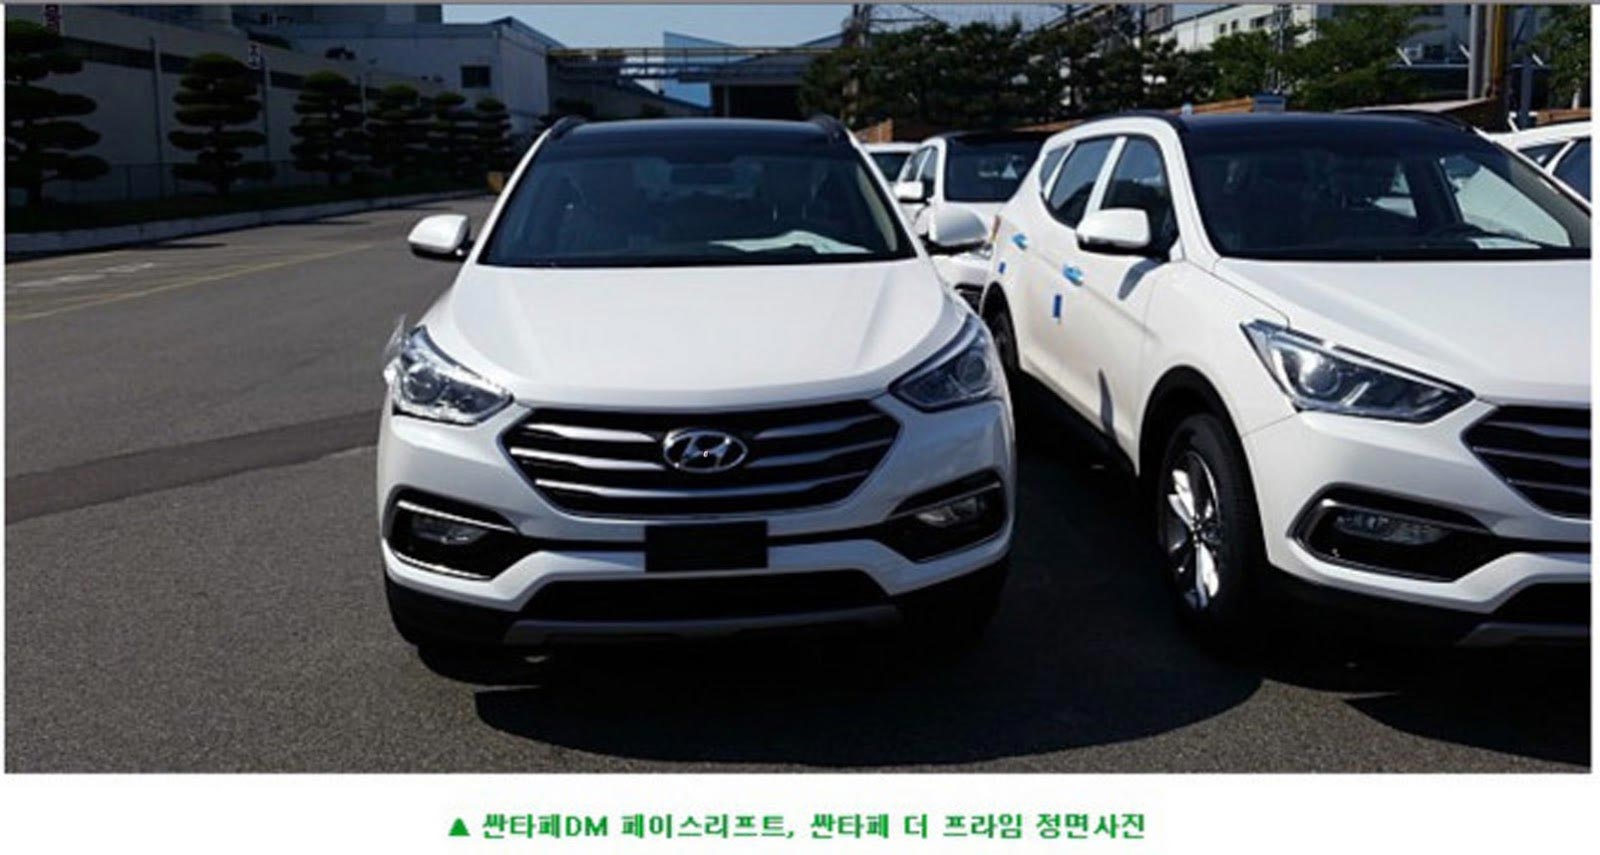 Berita, hyundai-santa-fe-facelift-depan: Sosok Hyundai Santa Fe Facelift 2016 Tertangkap Kamera Tanpa Penyamaran